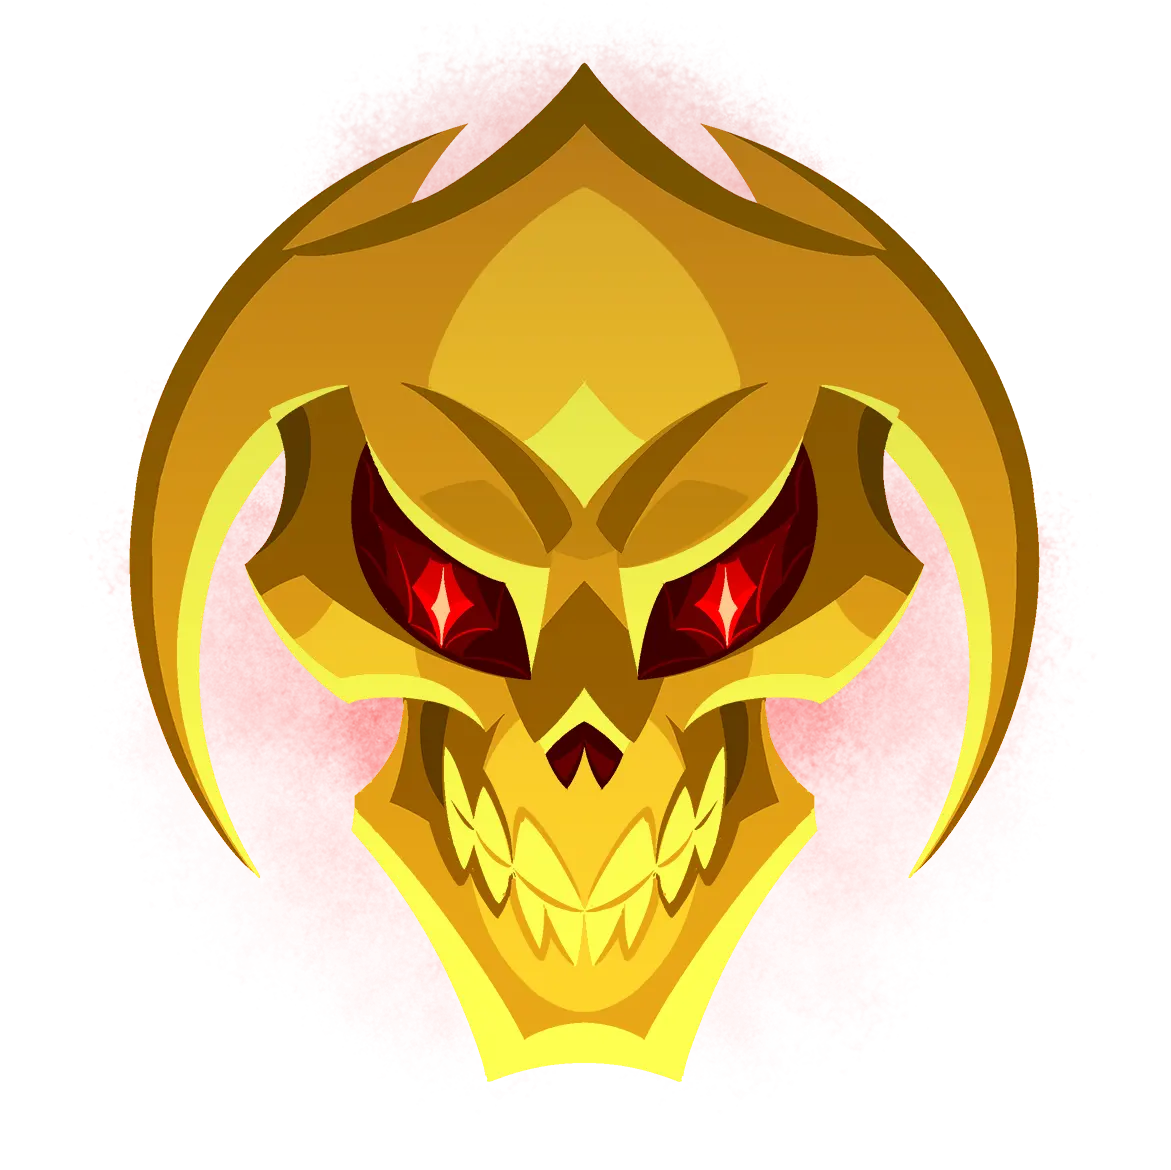 Gold of Skulls logo